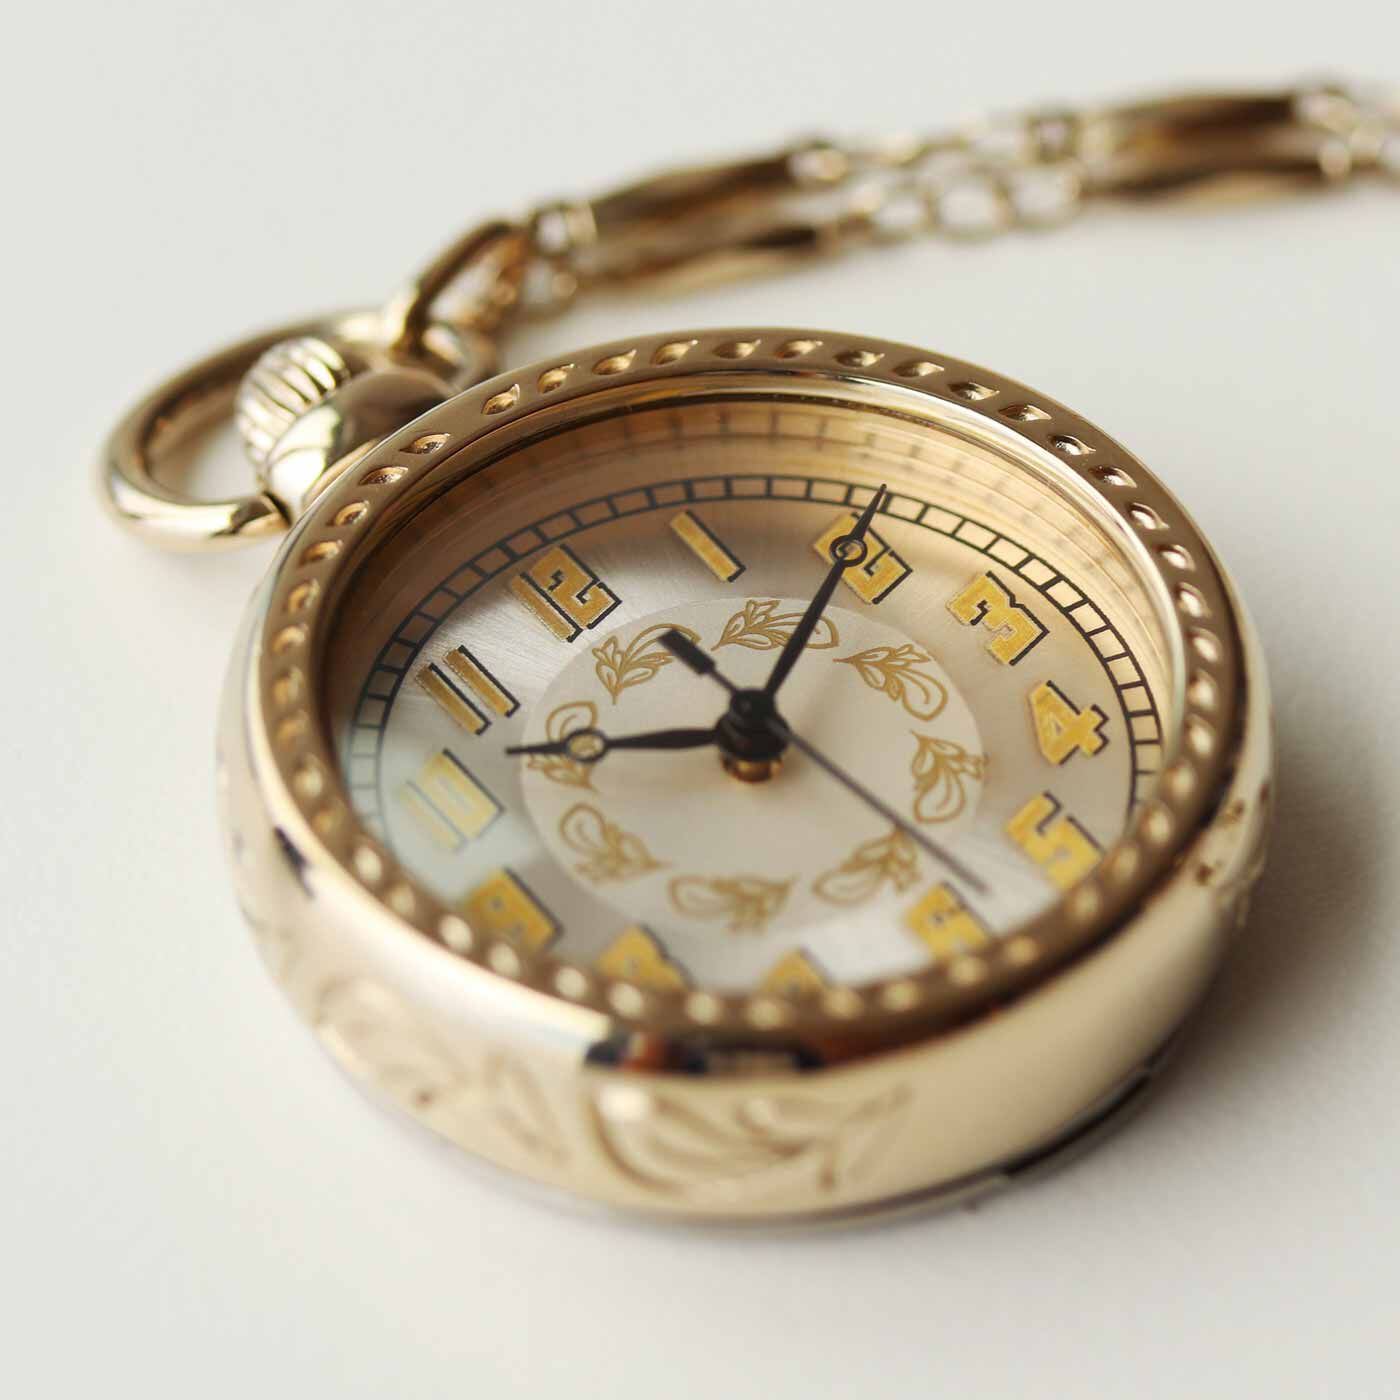 ＆Stories|滋賀の時計工房と作った アールデコ調の懐中時計〈シャンパンゴールド〉|傷が付きにくく、透明度が高く視認性がよいミネラルガラスレンズを使用。